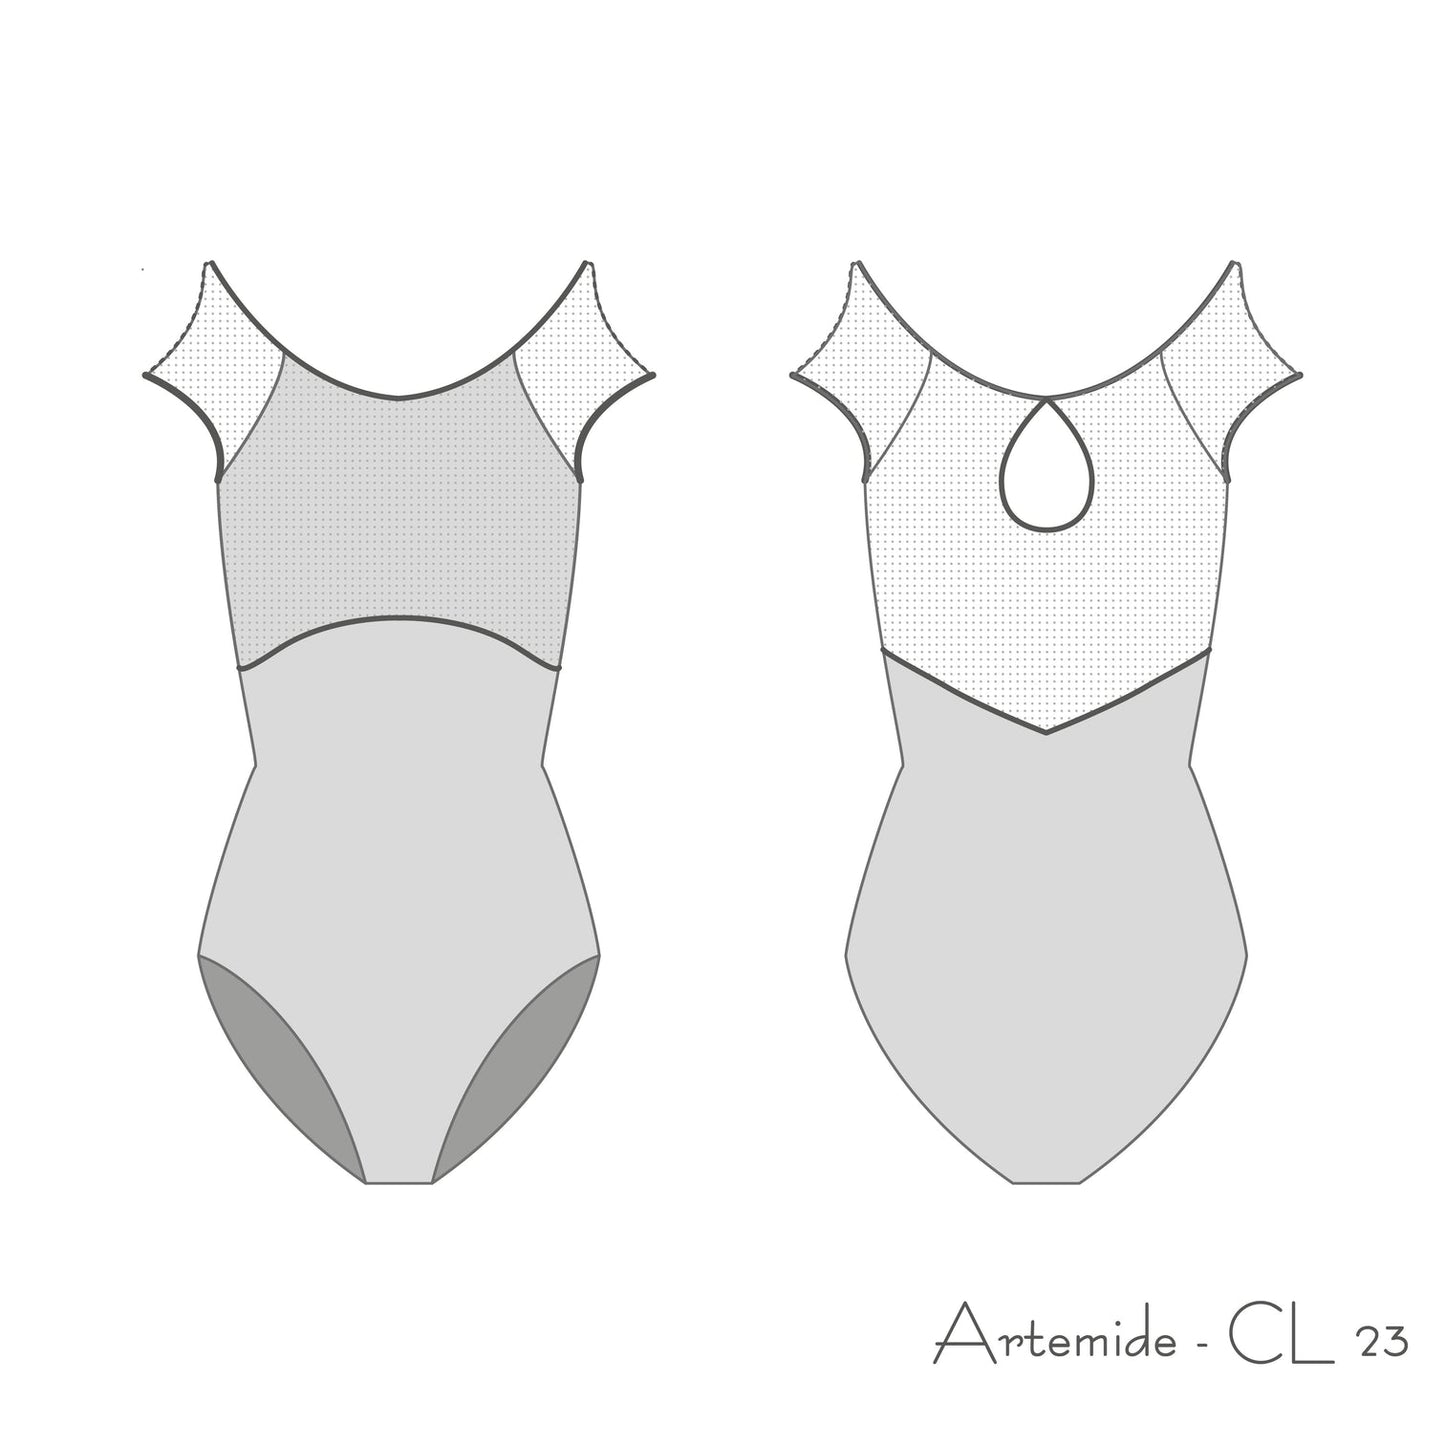 Artemide CL